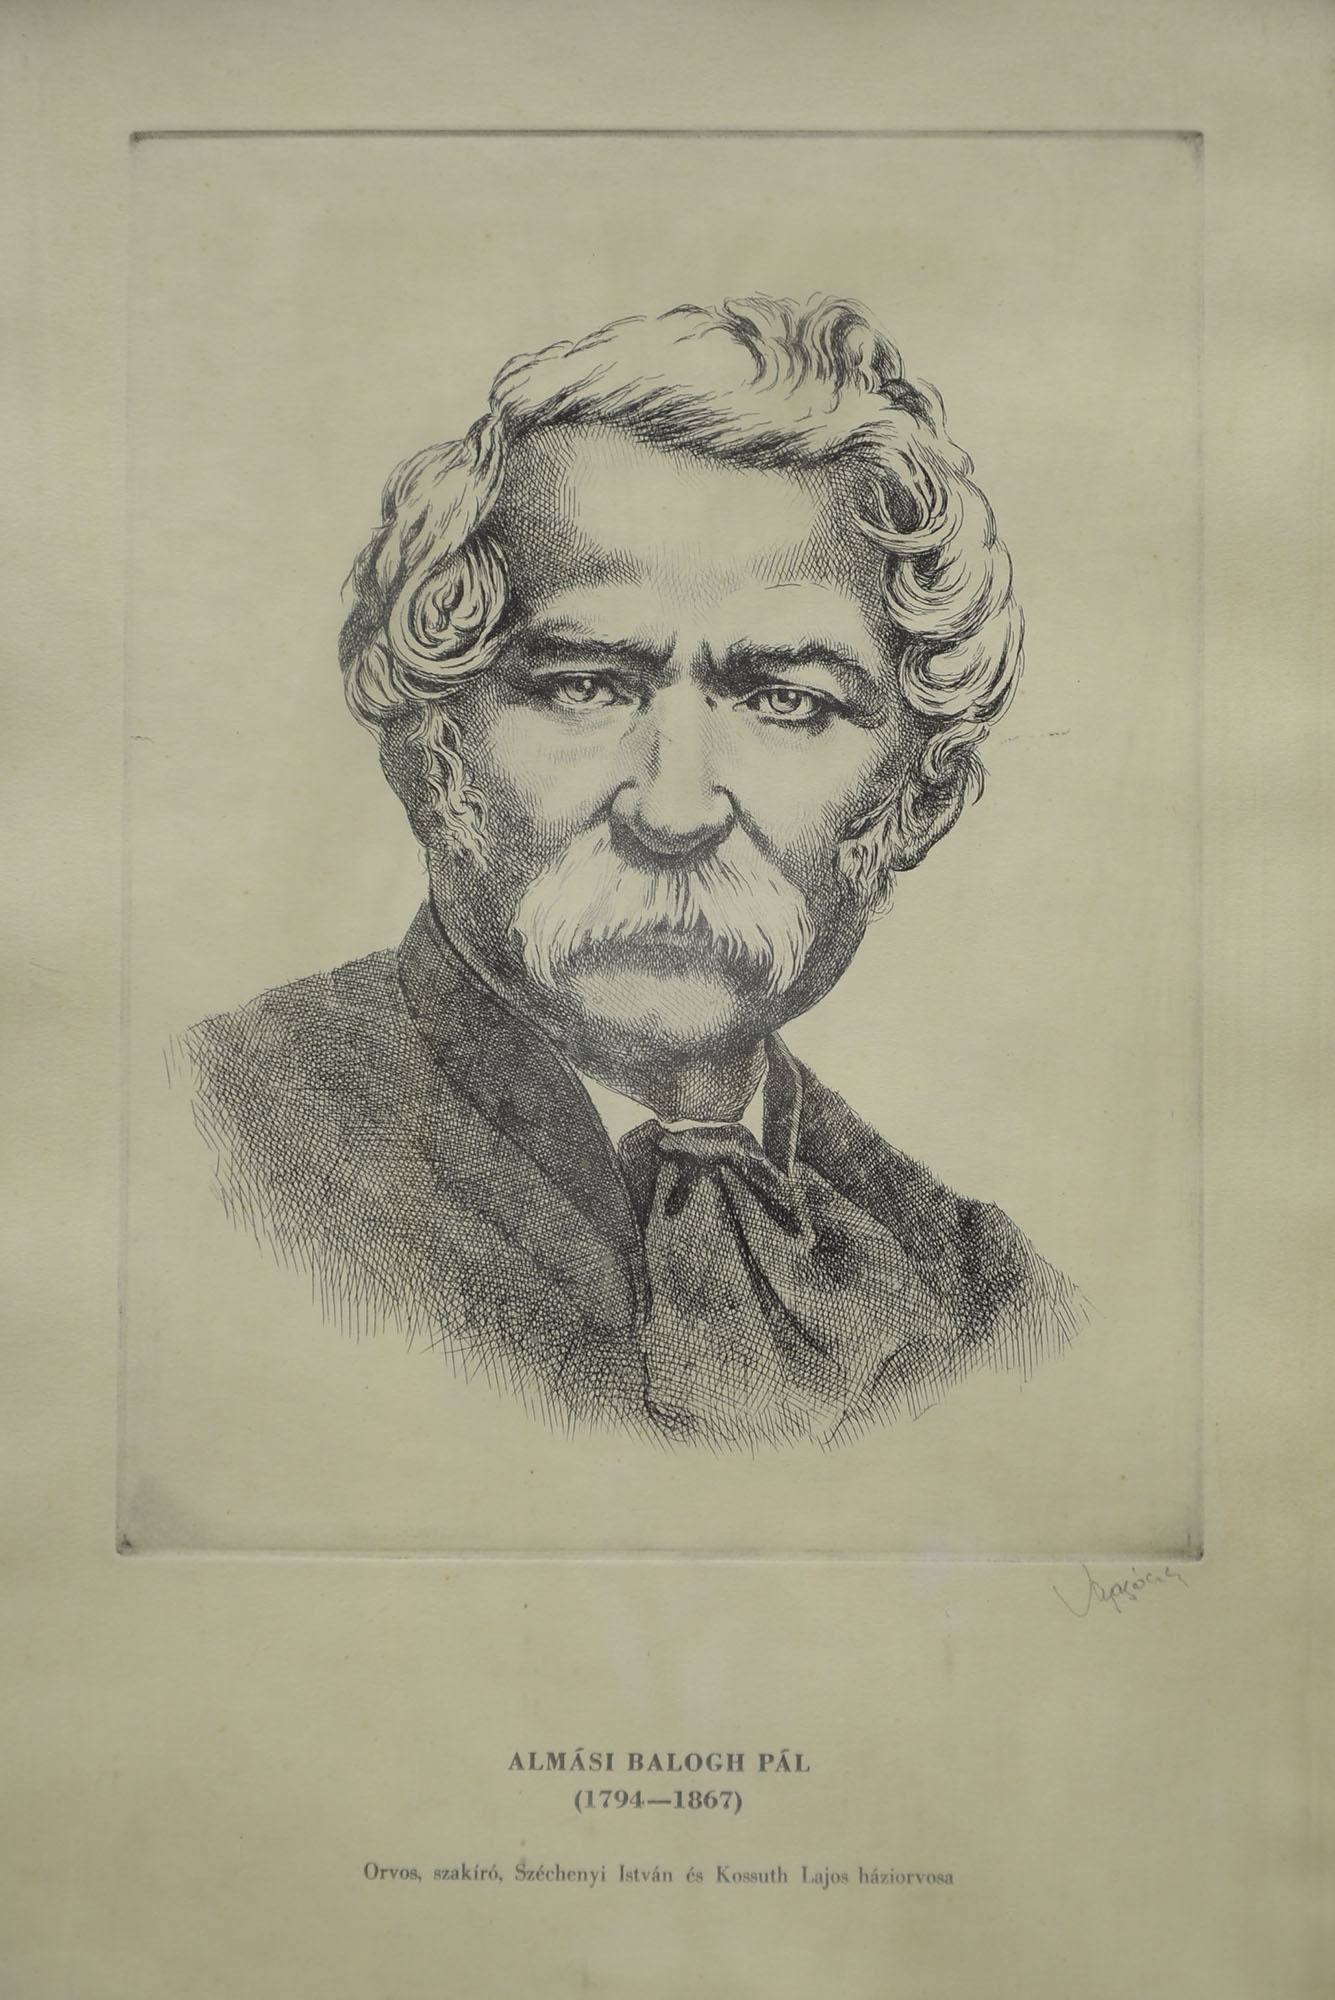 Vagyóczky Károly (1941- ): Almási Balogh Pál (1794-1867) (Herman Ottó Múzeum, Miskolc CC BY-NC-SA)